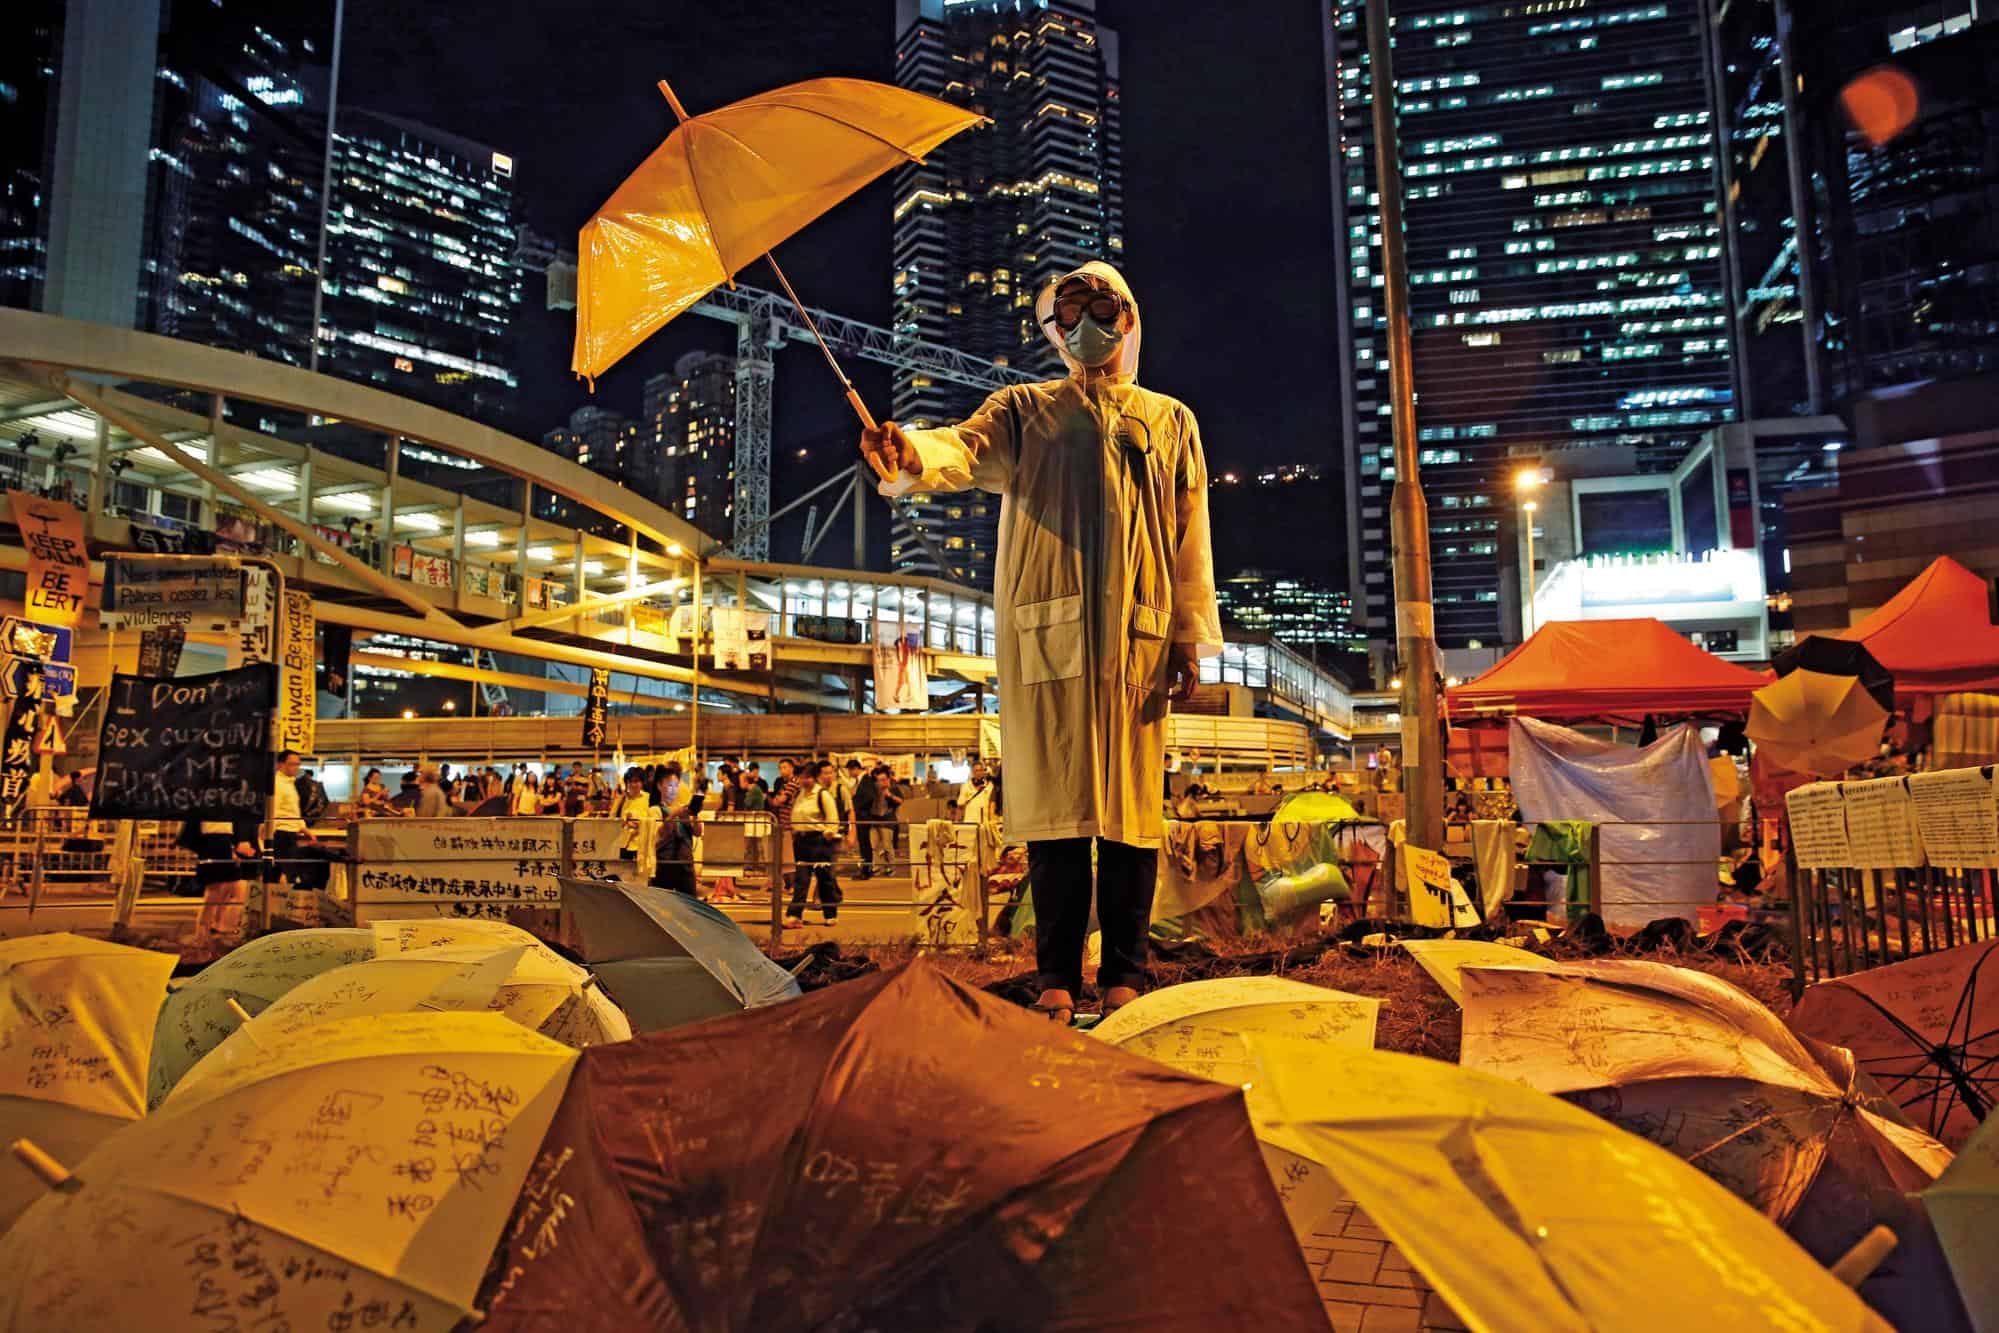 雨傘運動是香港盛衰的轉捩點。